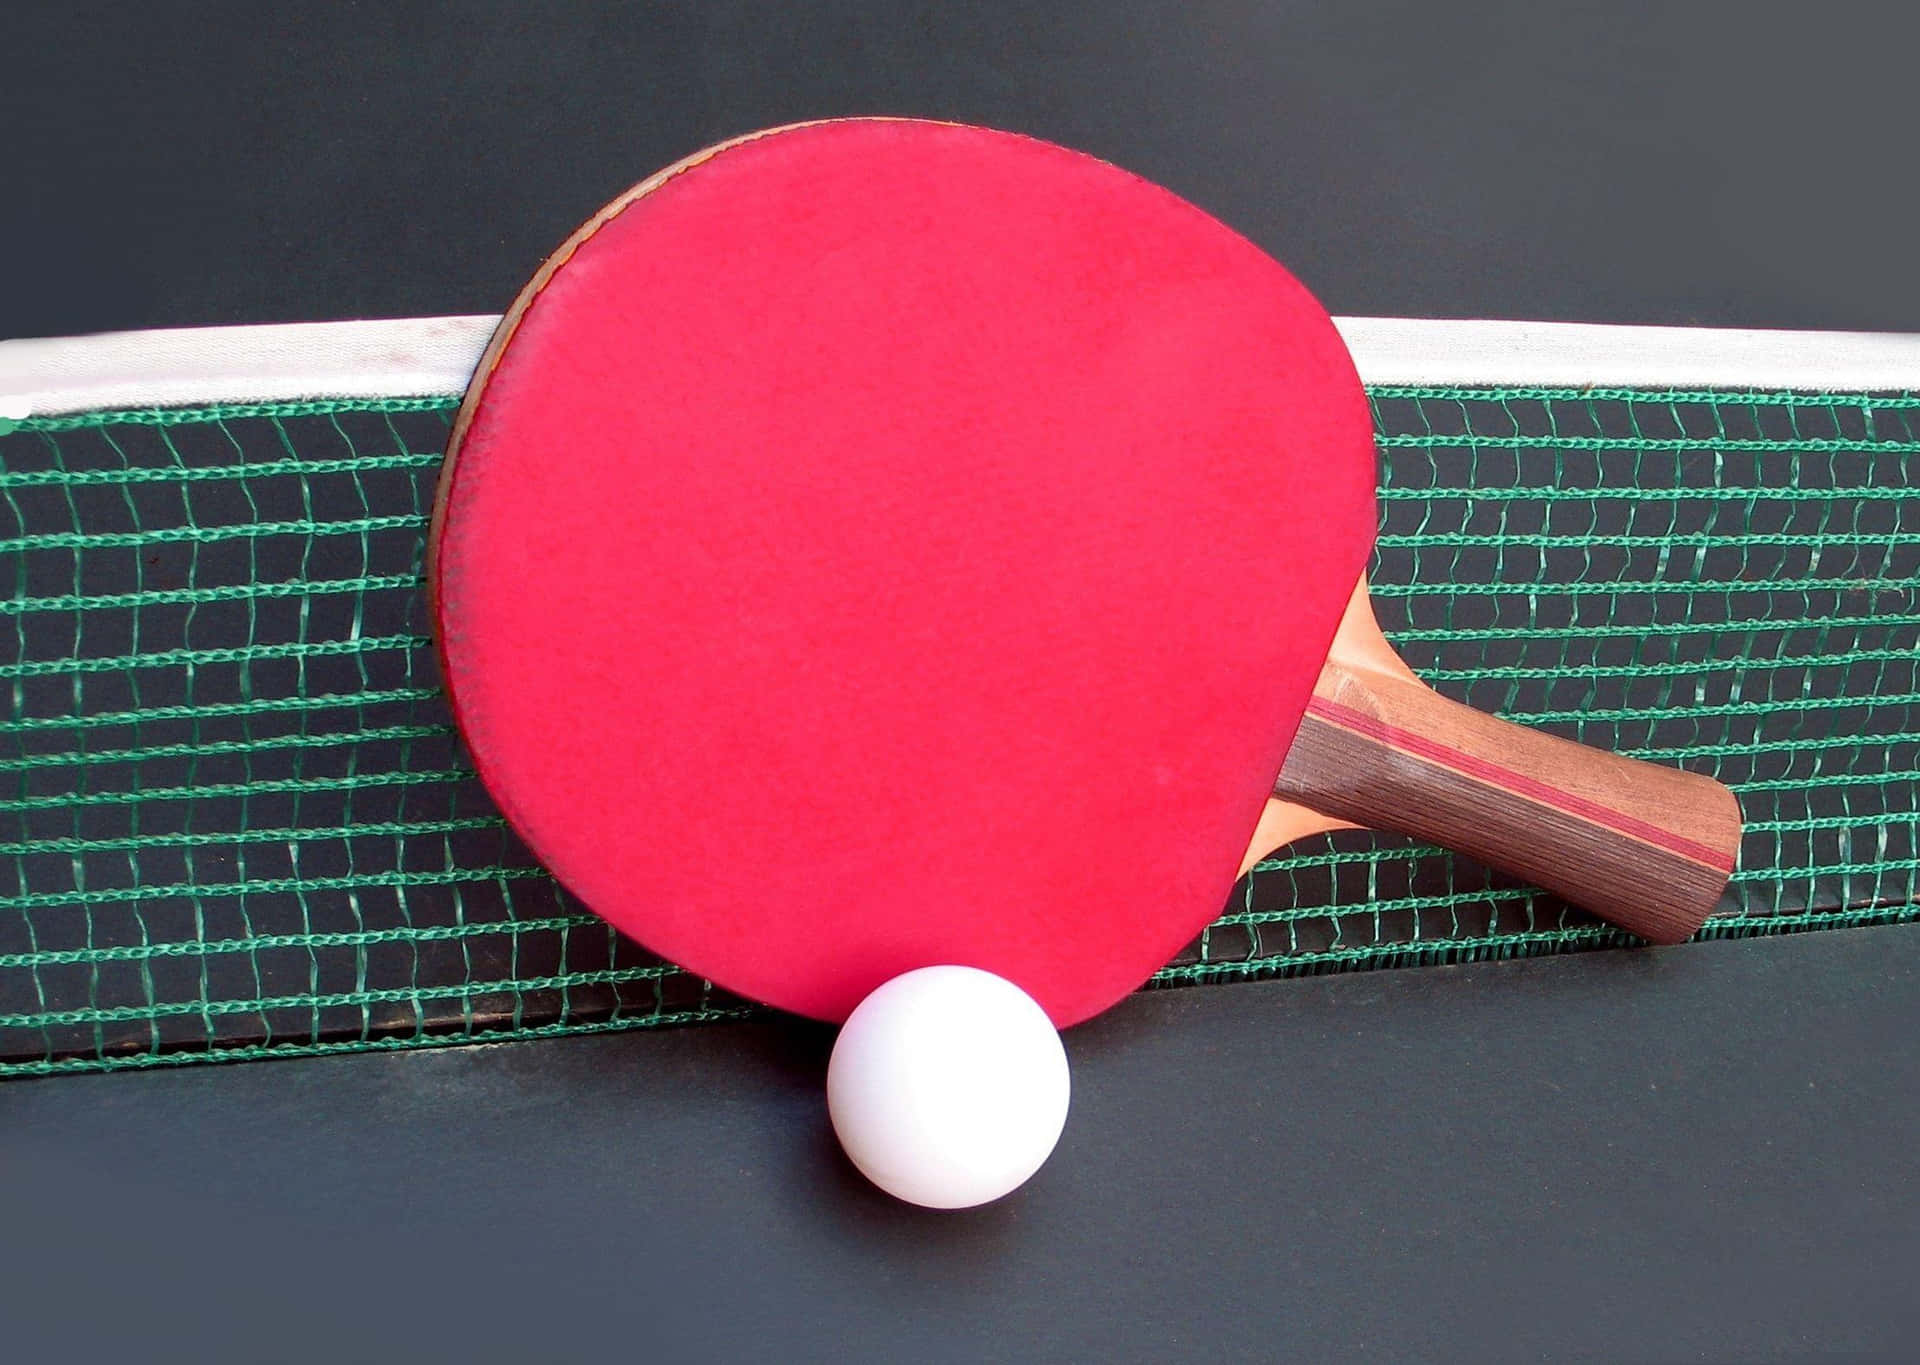 Unaraqueta Y Pelota De Ping Pong Sobre Una Mesa